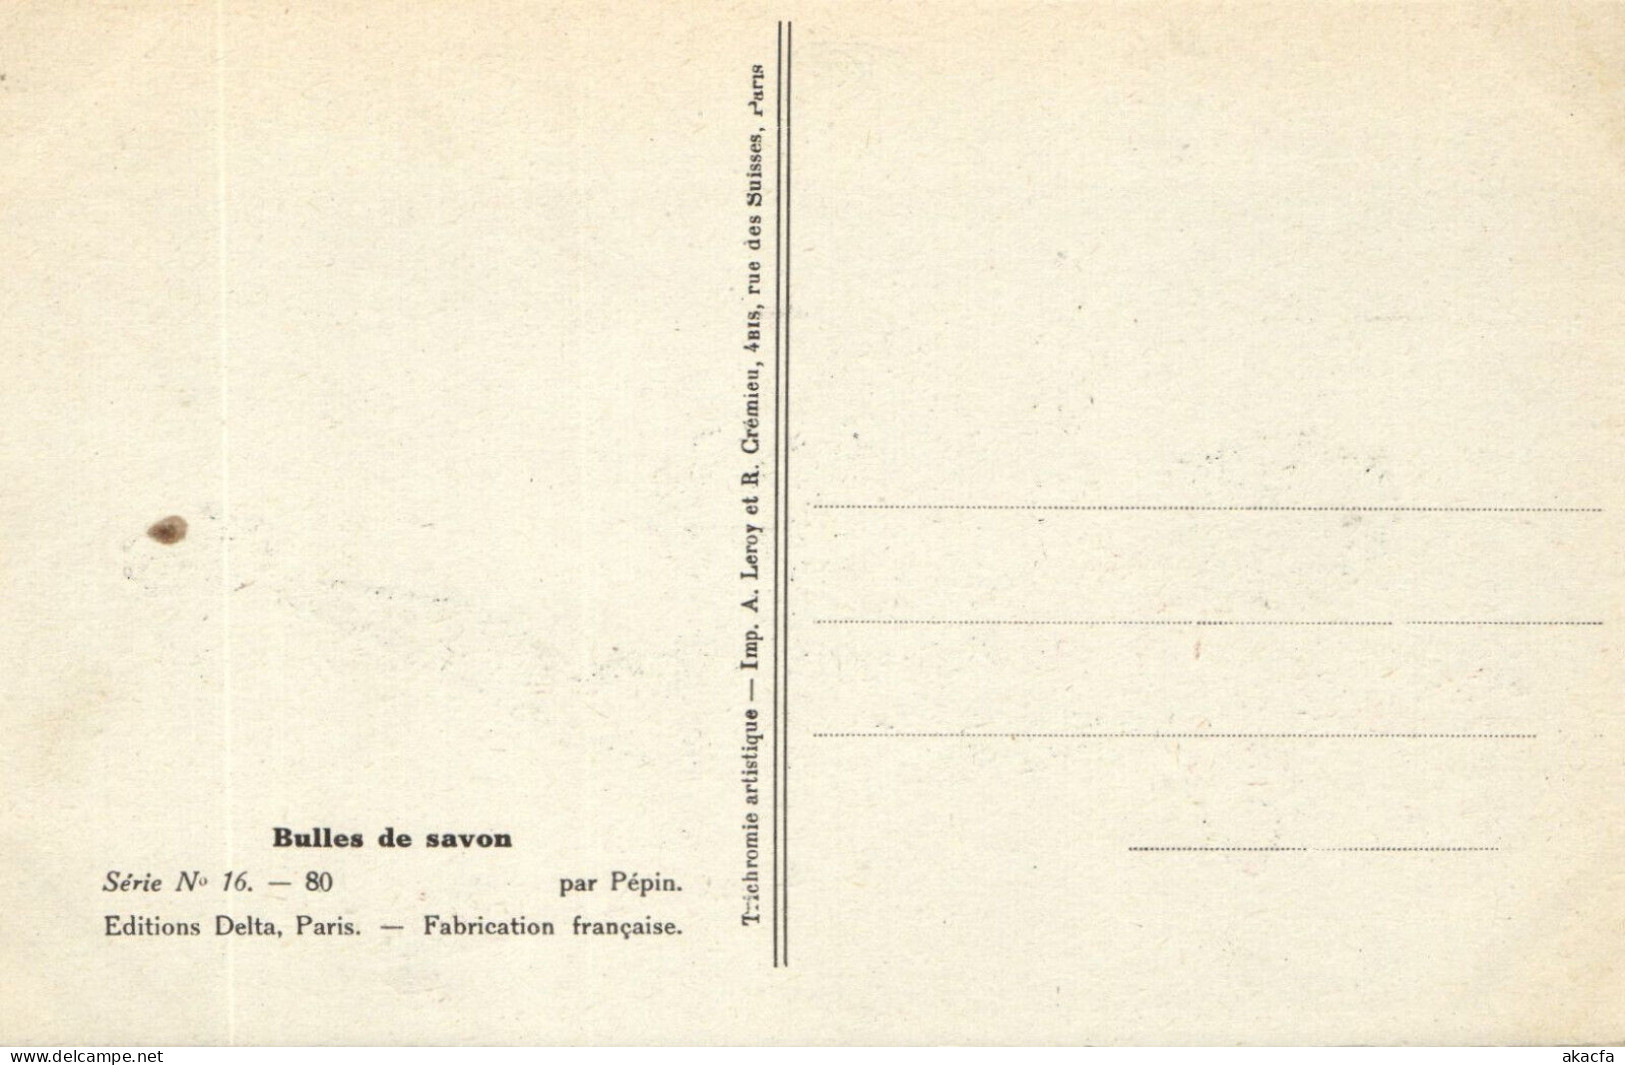 PC ARTIST SIGNED, M. PÉPIN, RISQUE, BULLES DE SAVON, Vintage Postcard (b50546) - Pepin